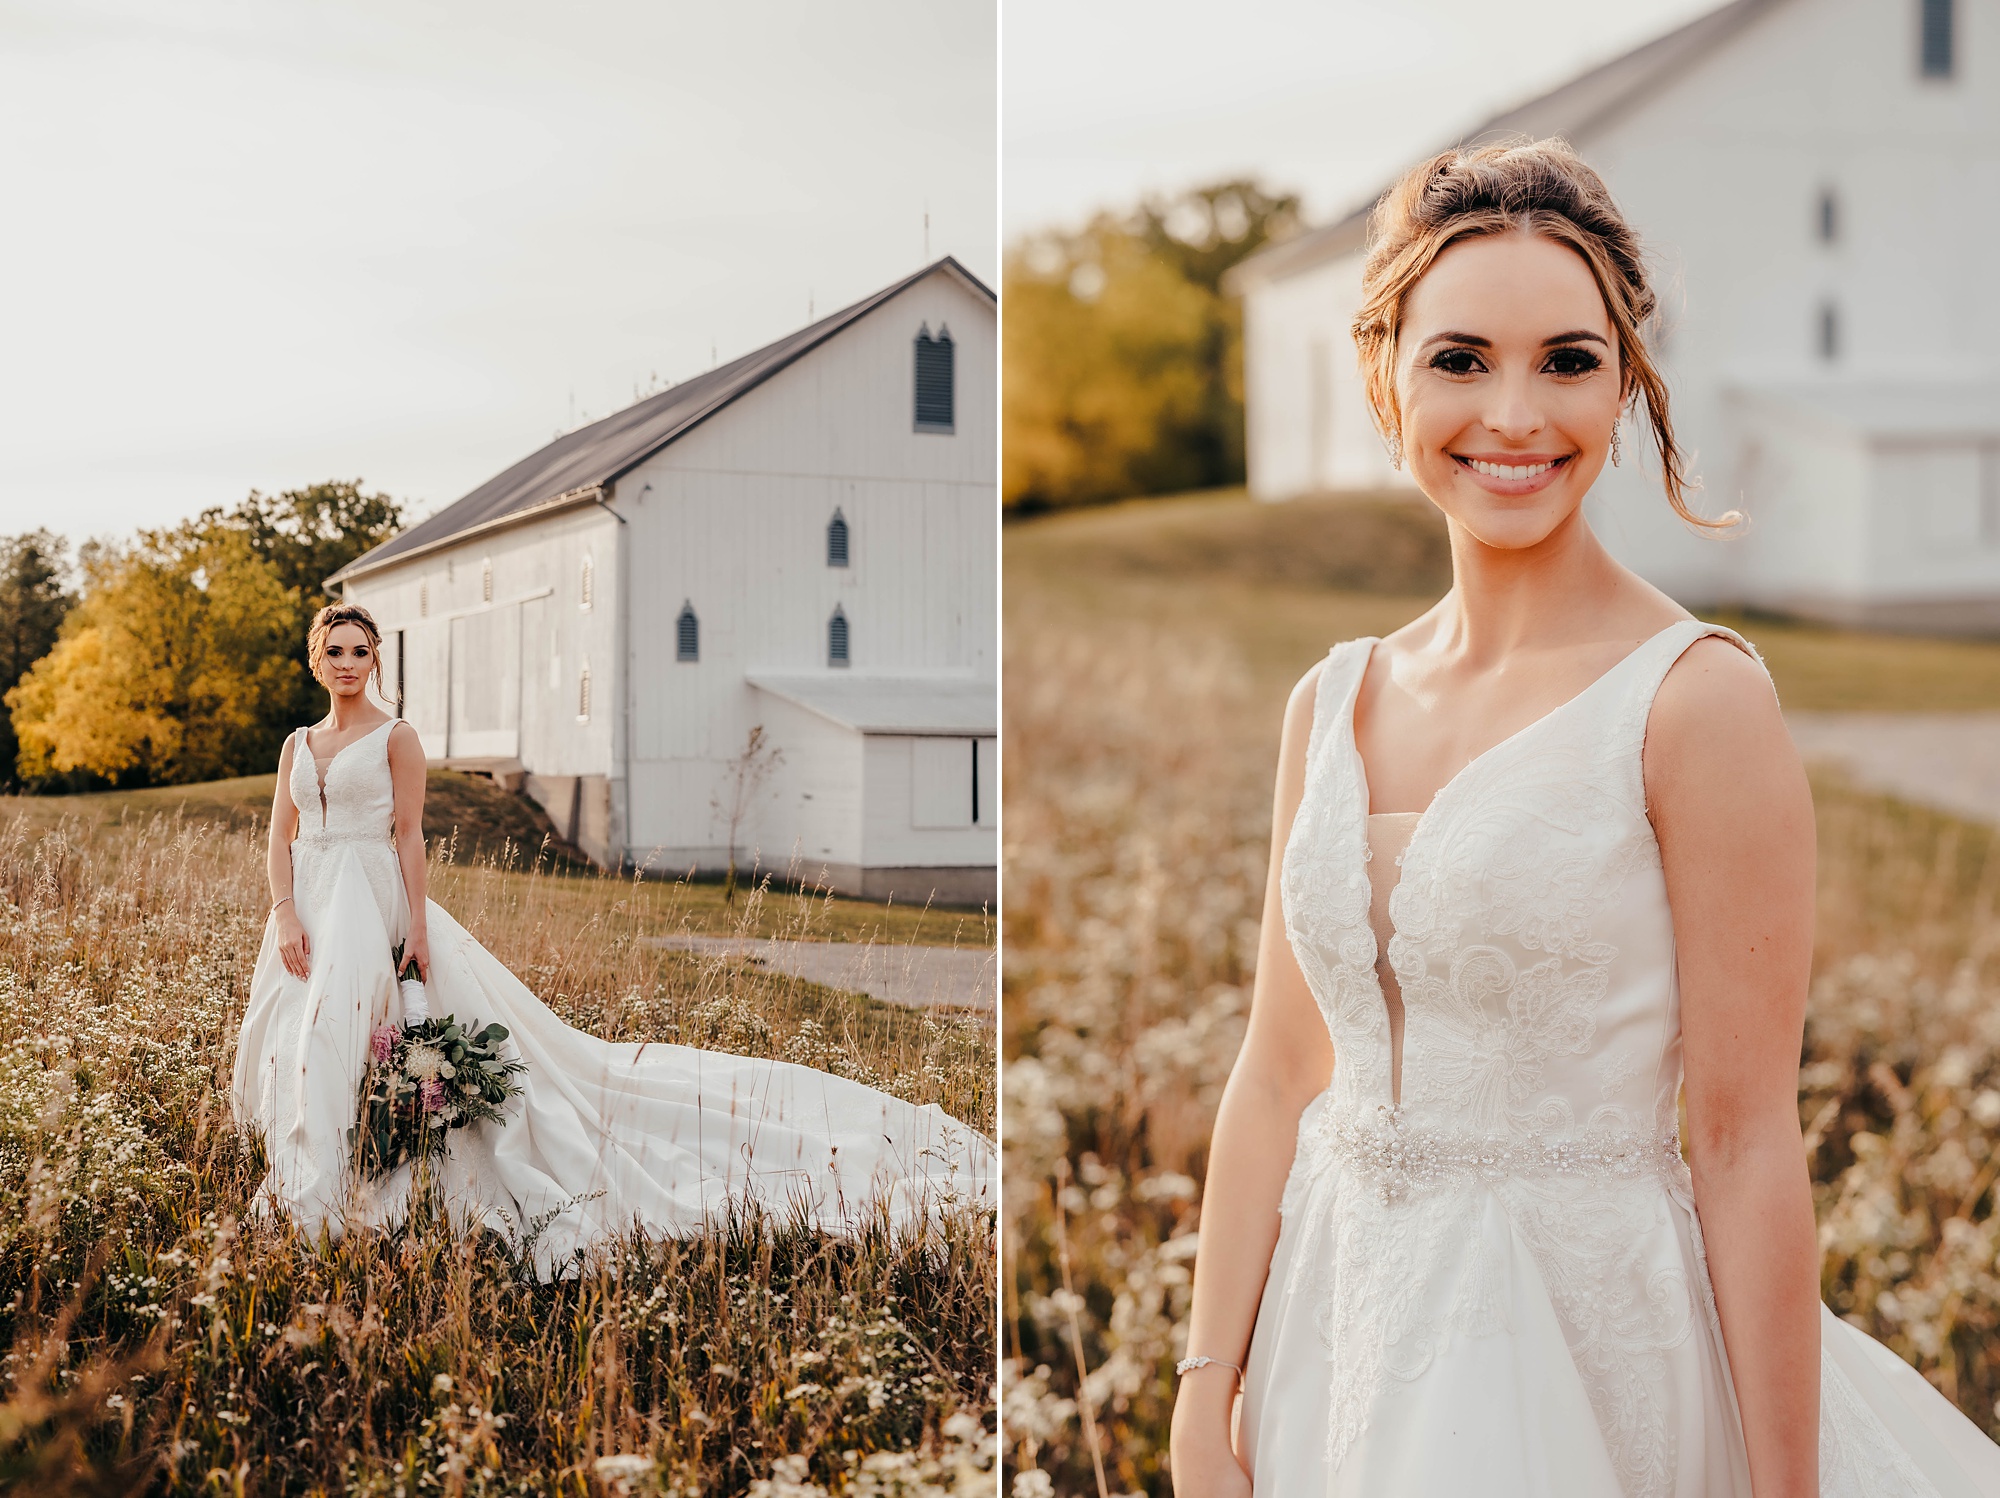 elegant fall bridal portraits in field by barn